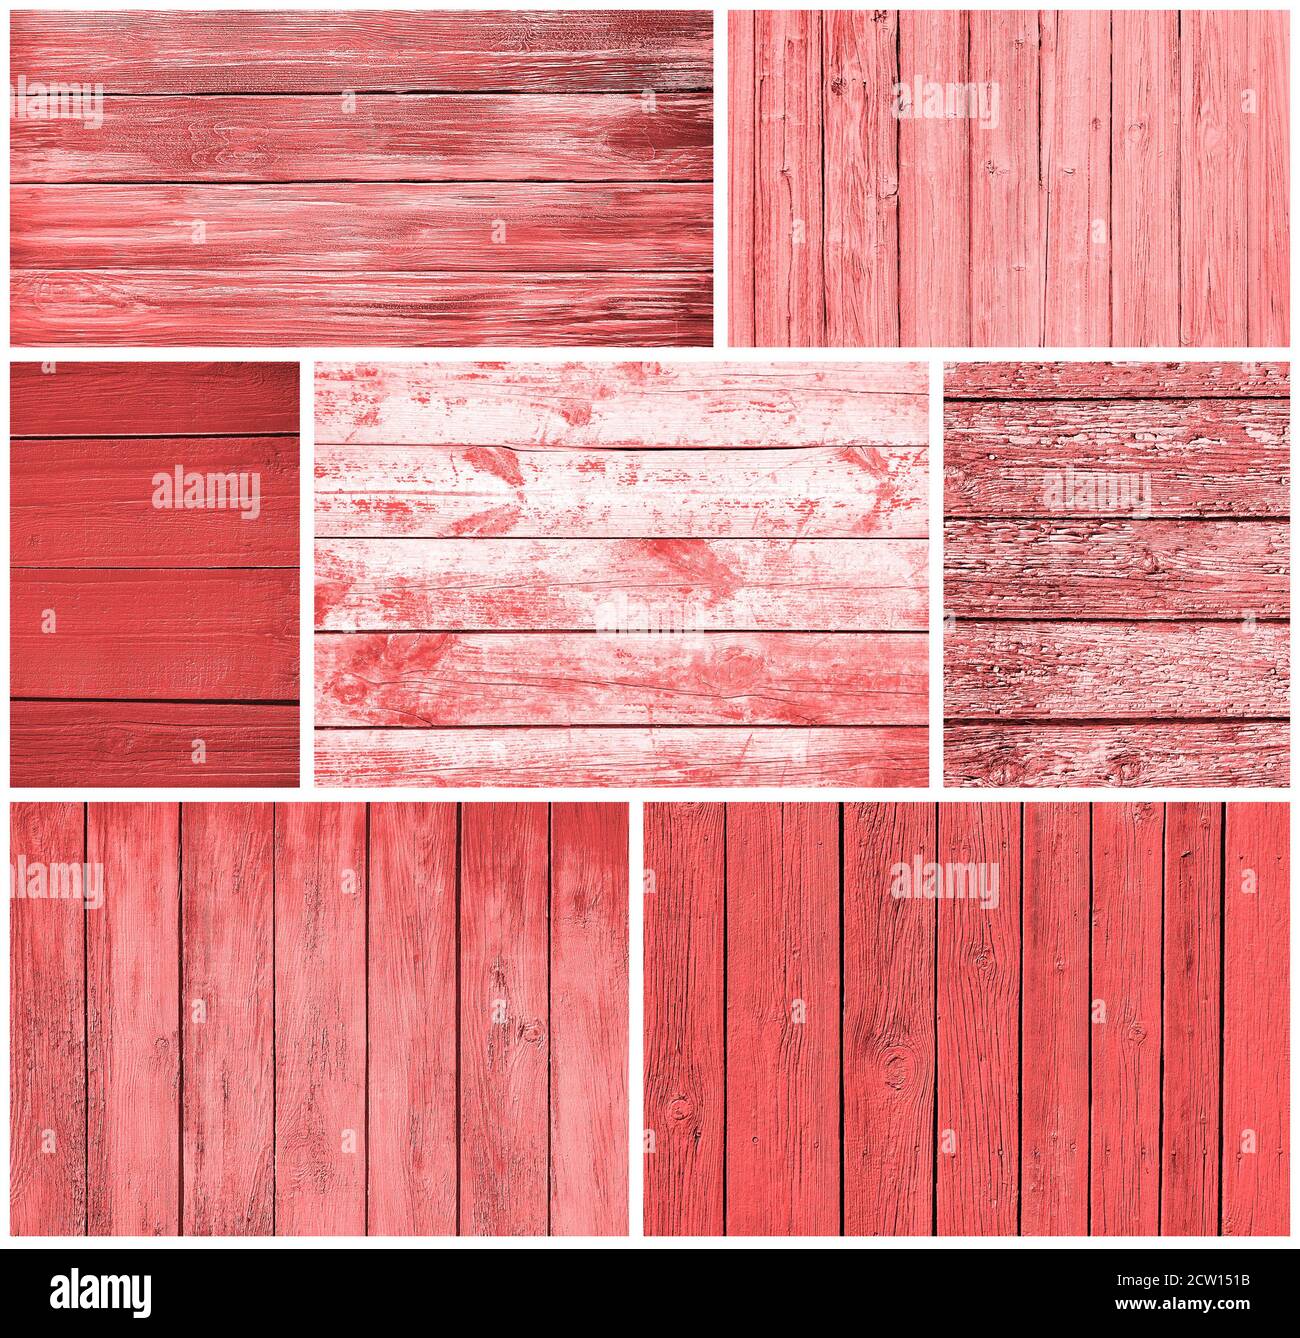 Jeu de différents panneaux de texture en bois peint en rouge Banque D'Images